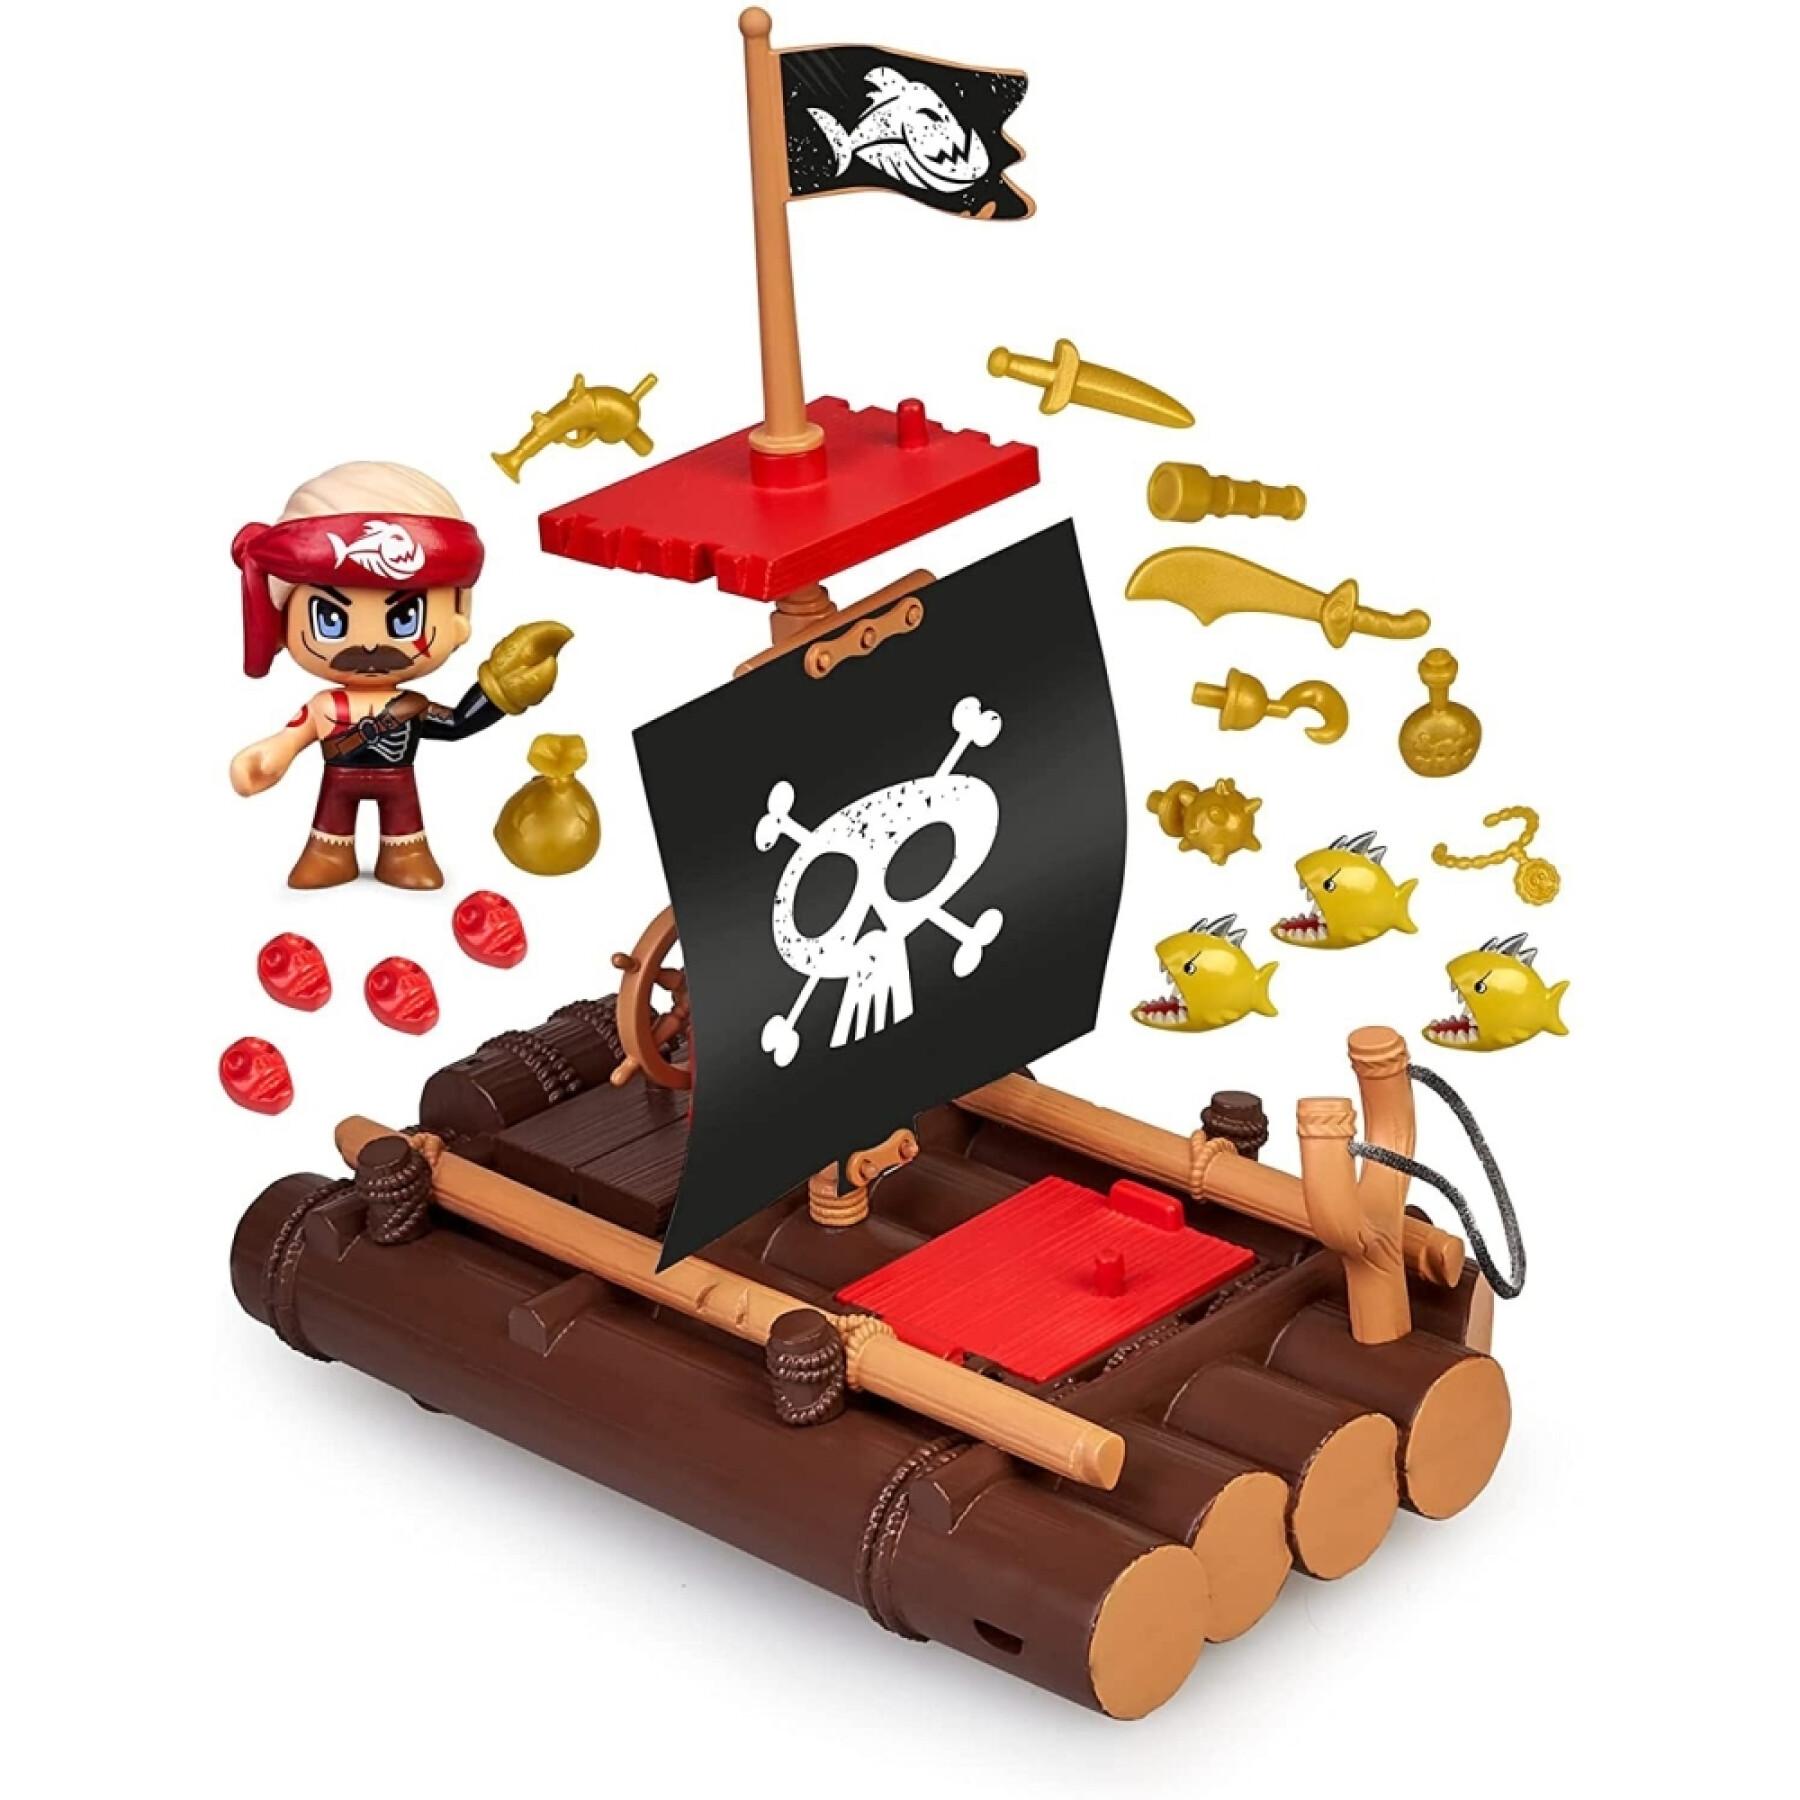 Figurina Pinypon Action Balsa Piratas